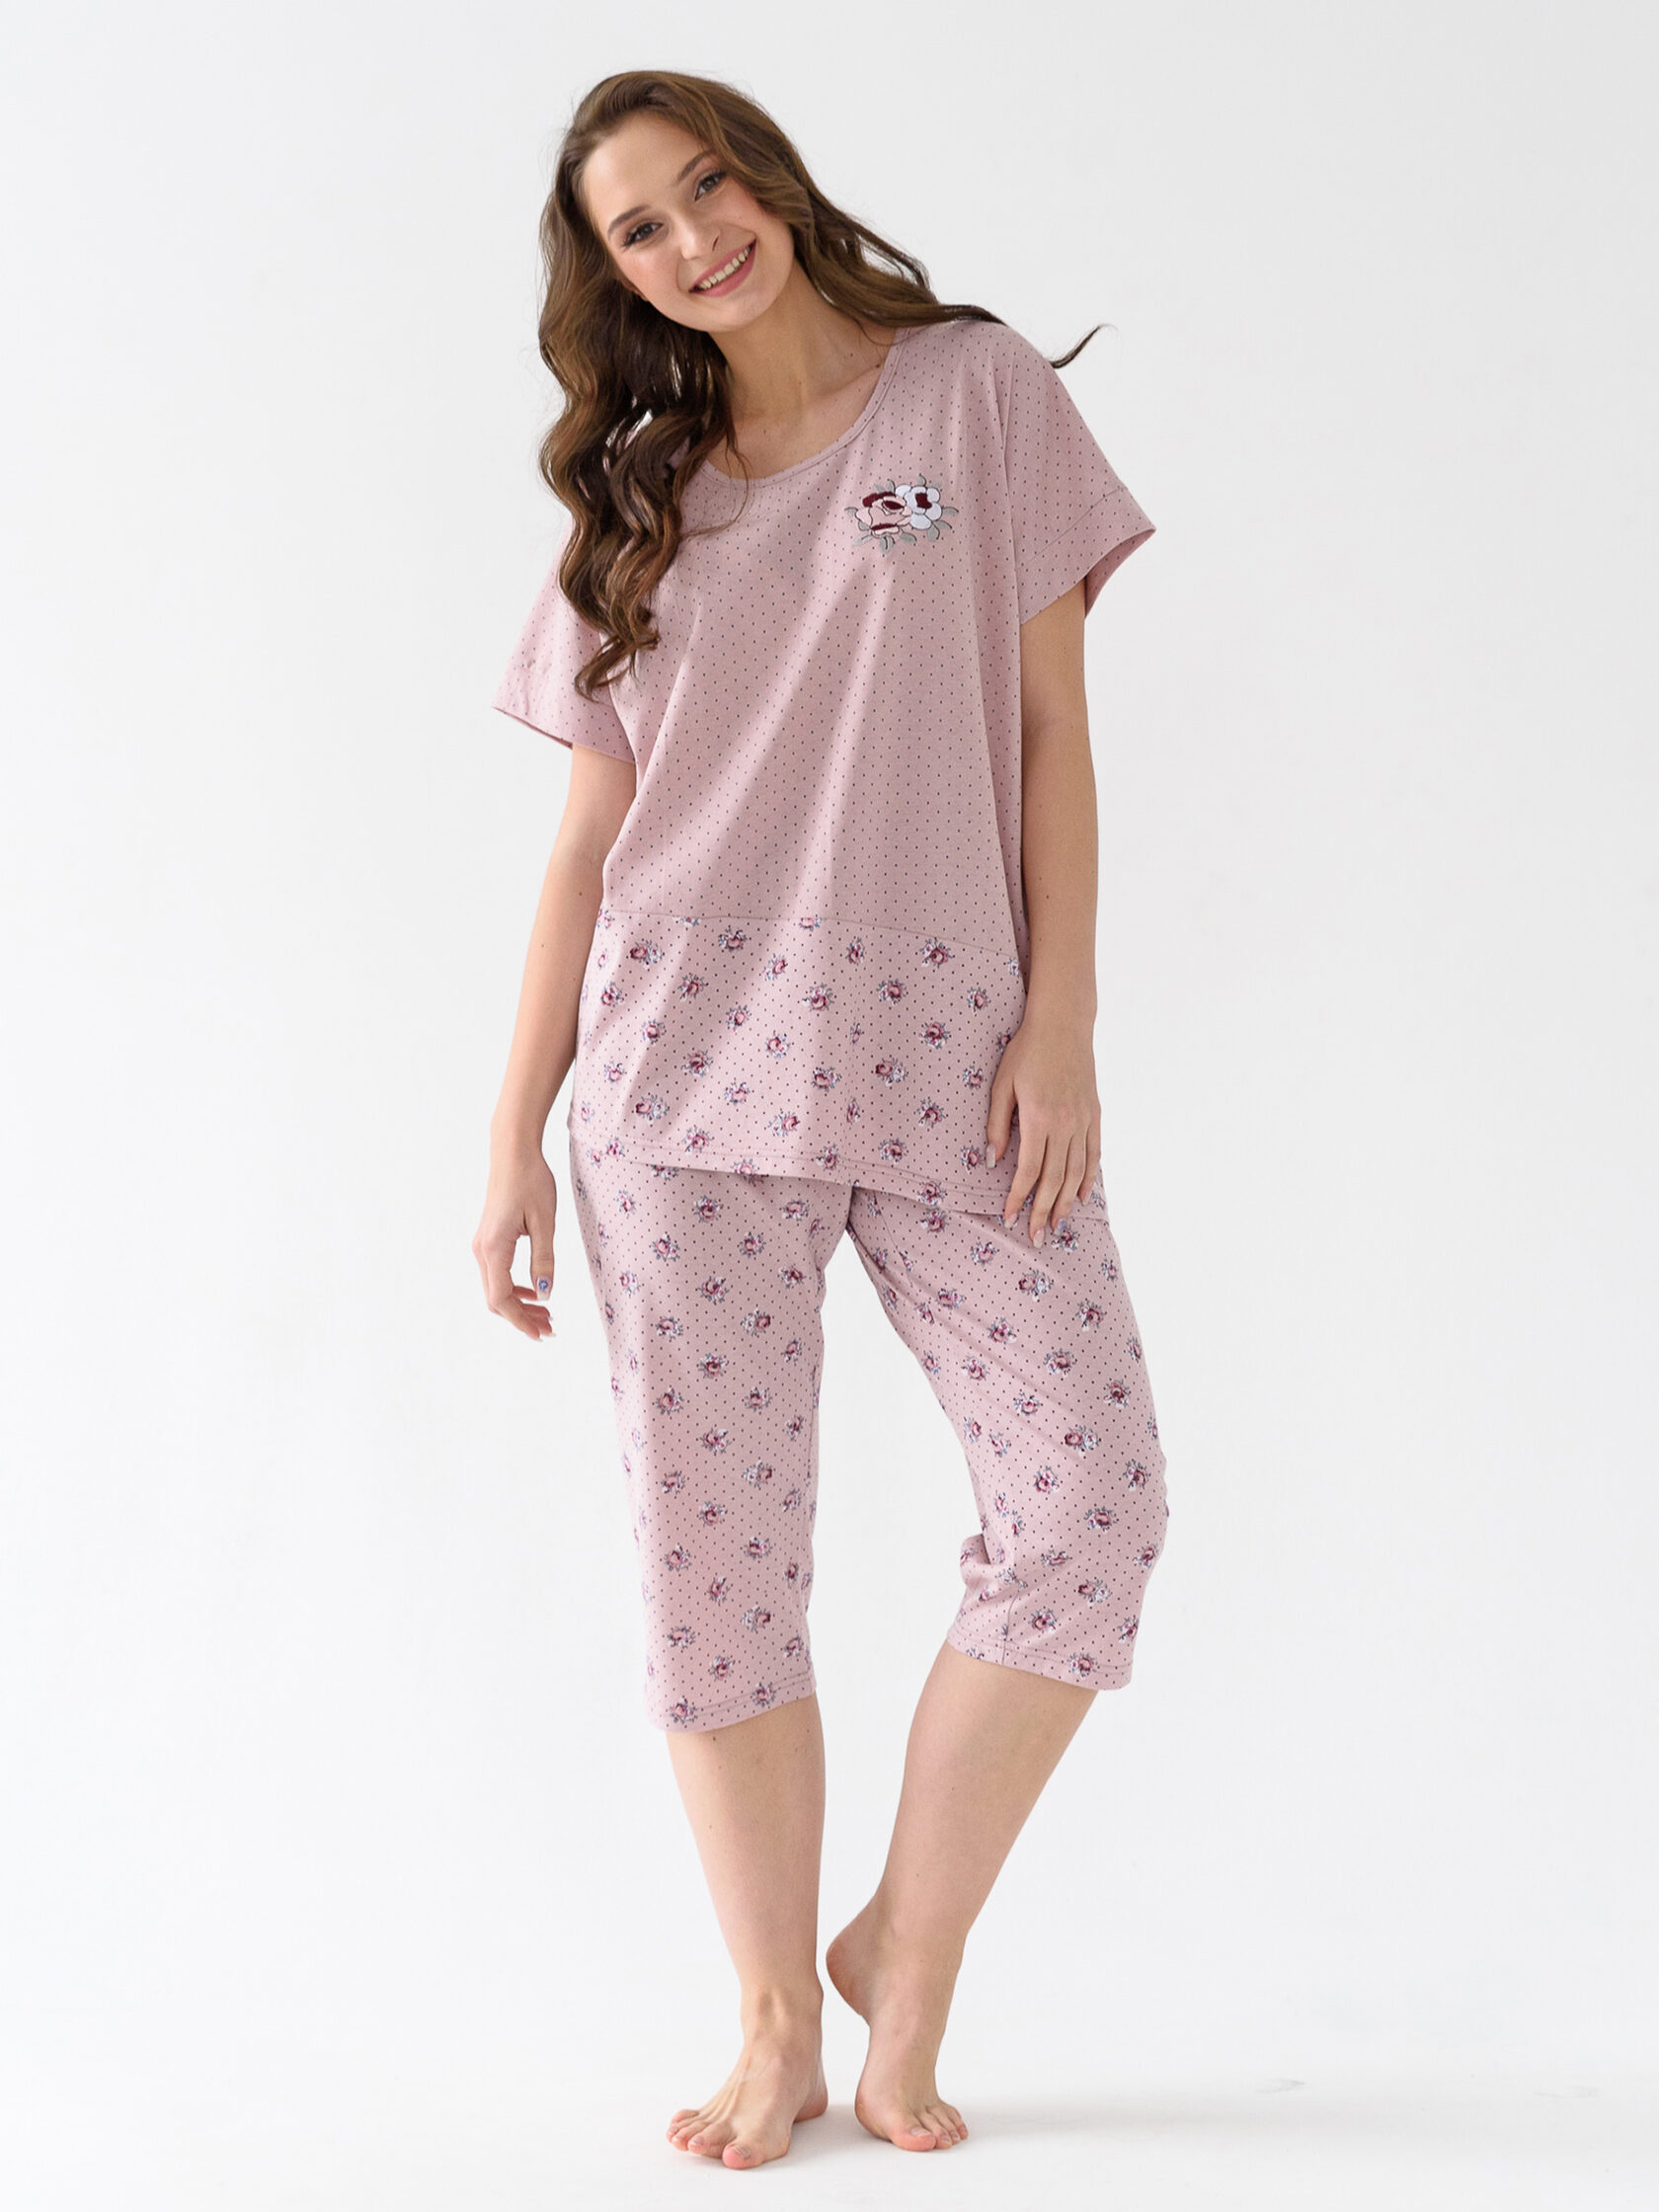 Жен. пижама с брюками "Букет" Розовый р. 62